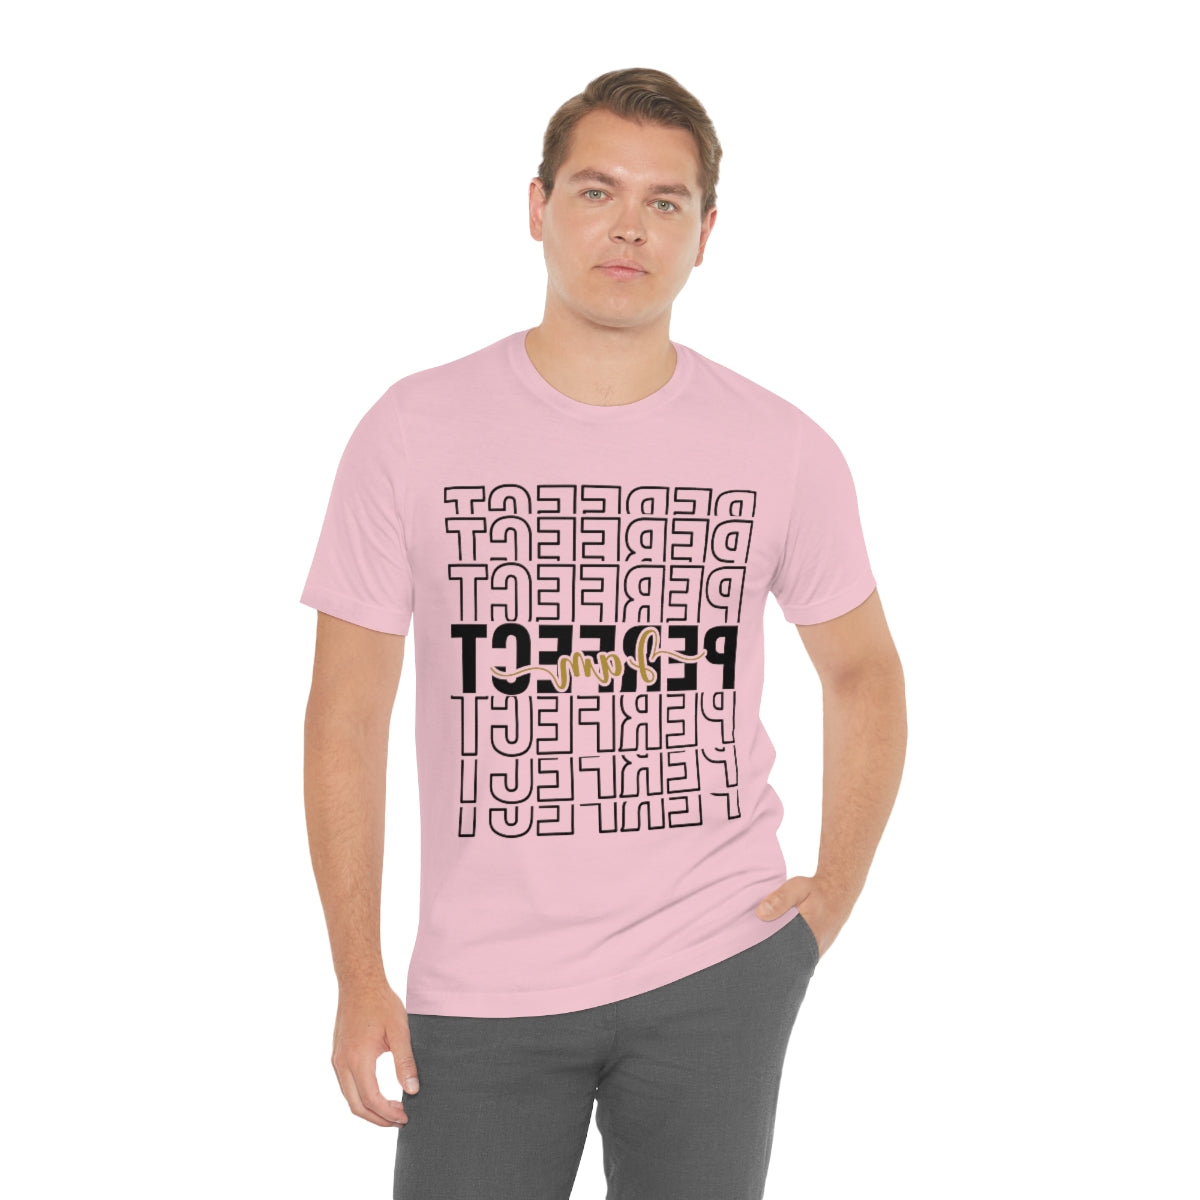 Affirmation Feminist Pro Choice T-Shirt Unisex Size, I am Perfect Shava Printify